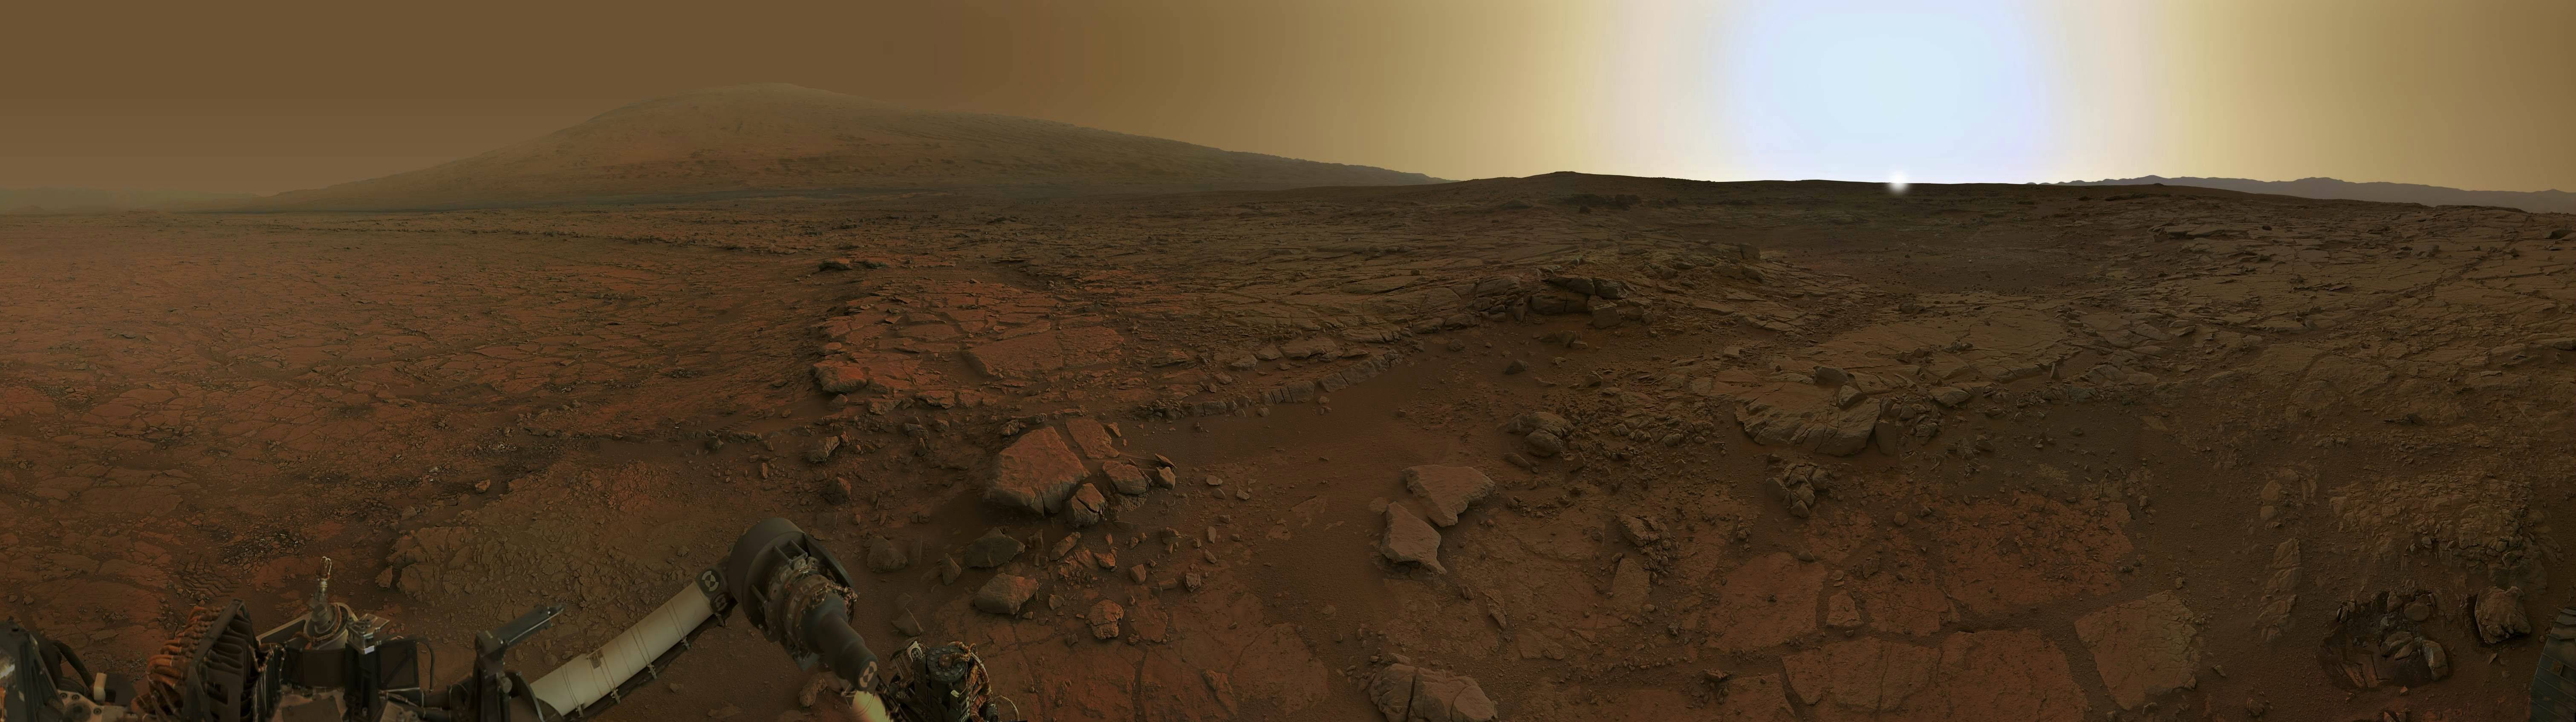 Панорама рассвета на Марсе